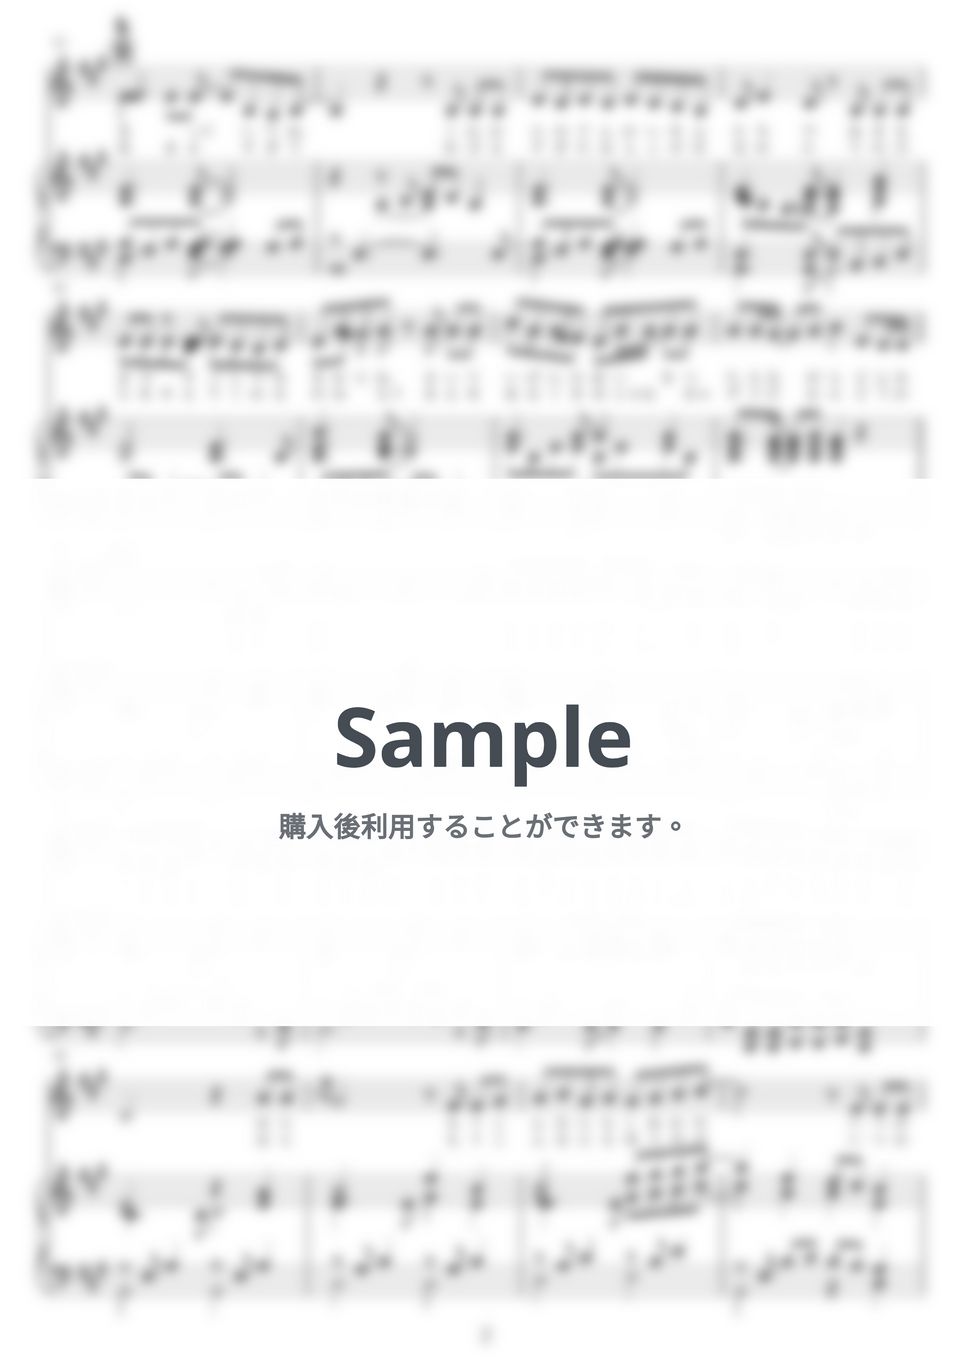 あいみょん - ハルノヒ by NOTES music